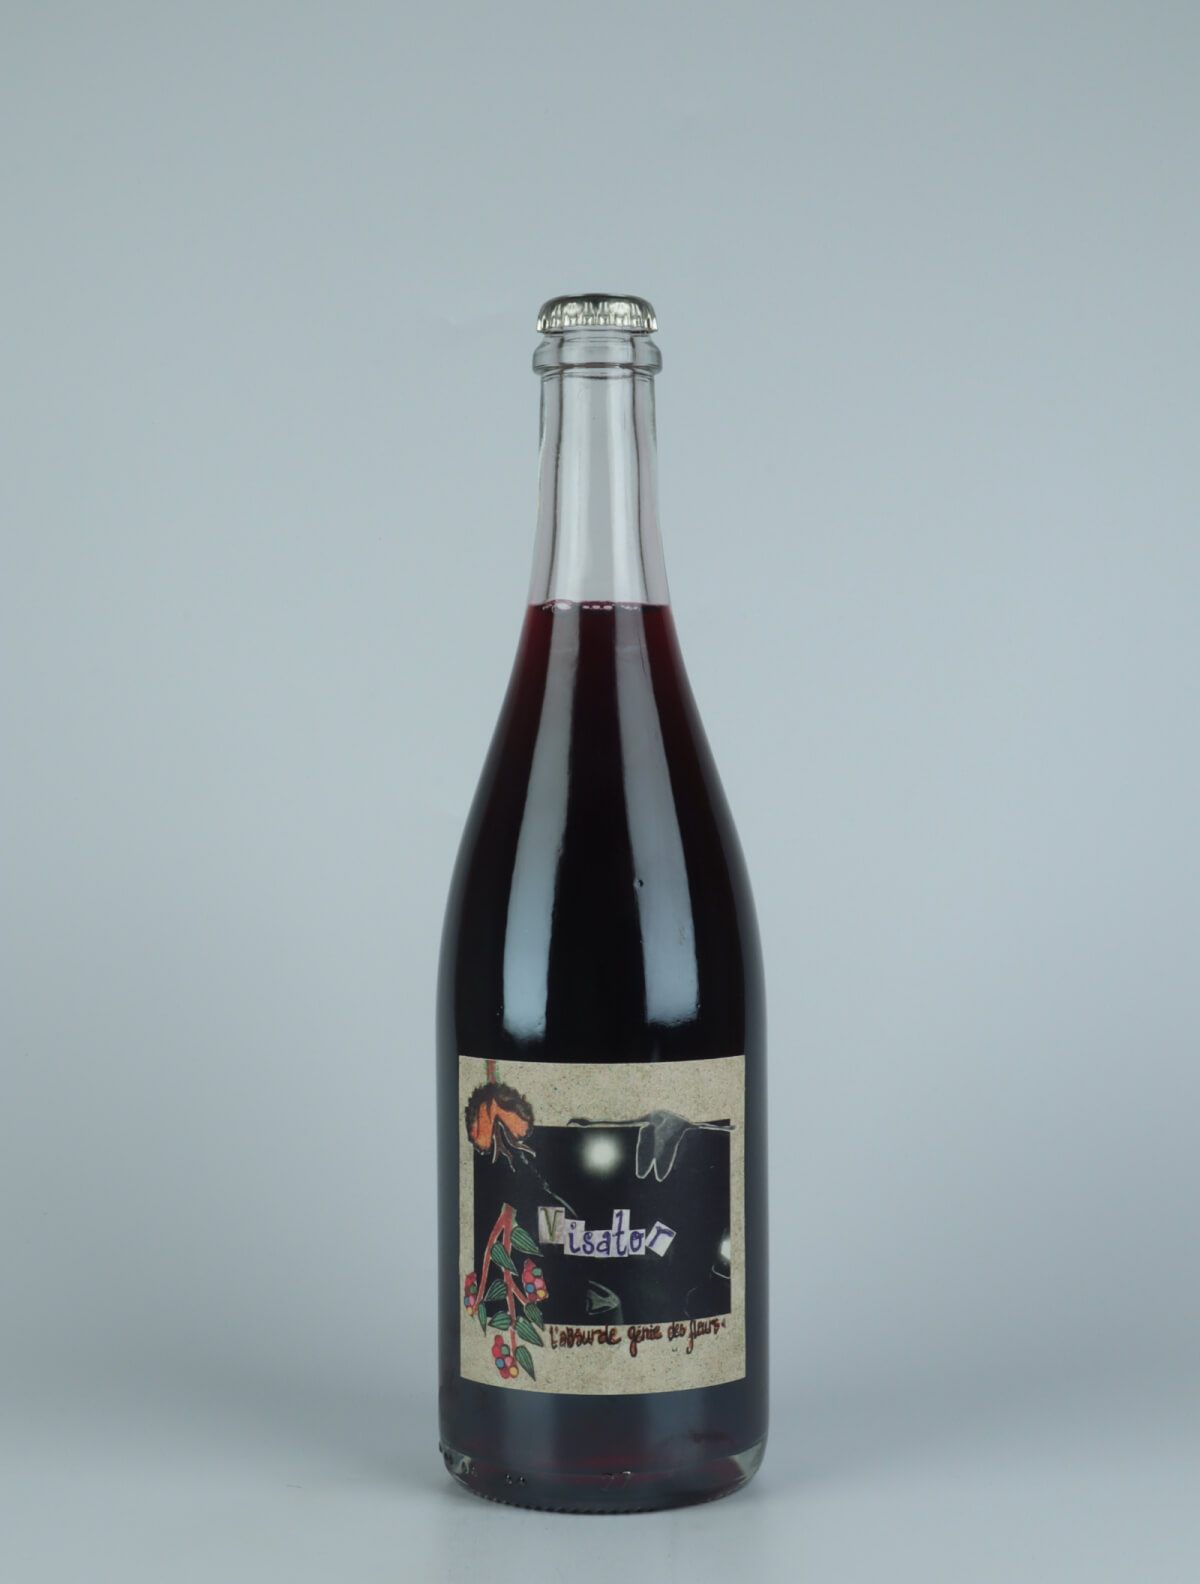 A bottle 2021 Visator Red wine from Absurde Génie des Fleurs, Languedoc in France